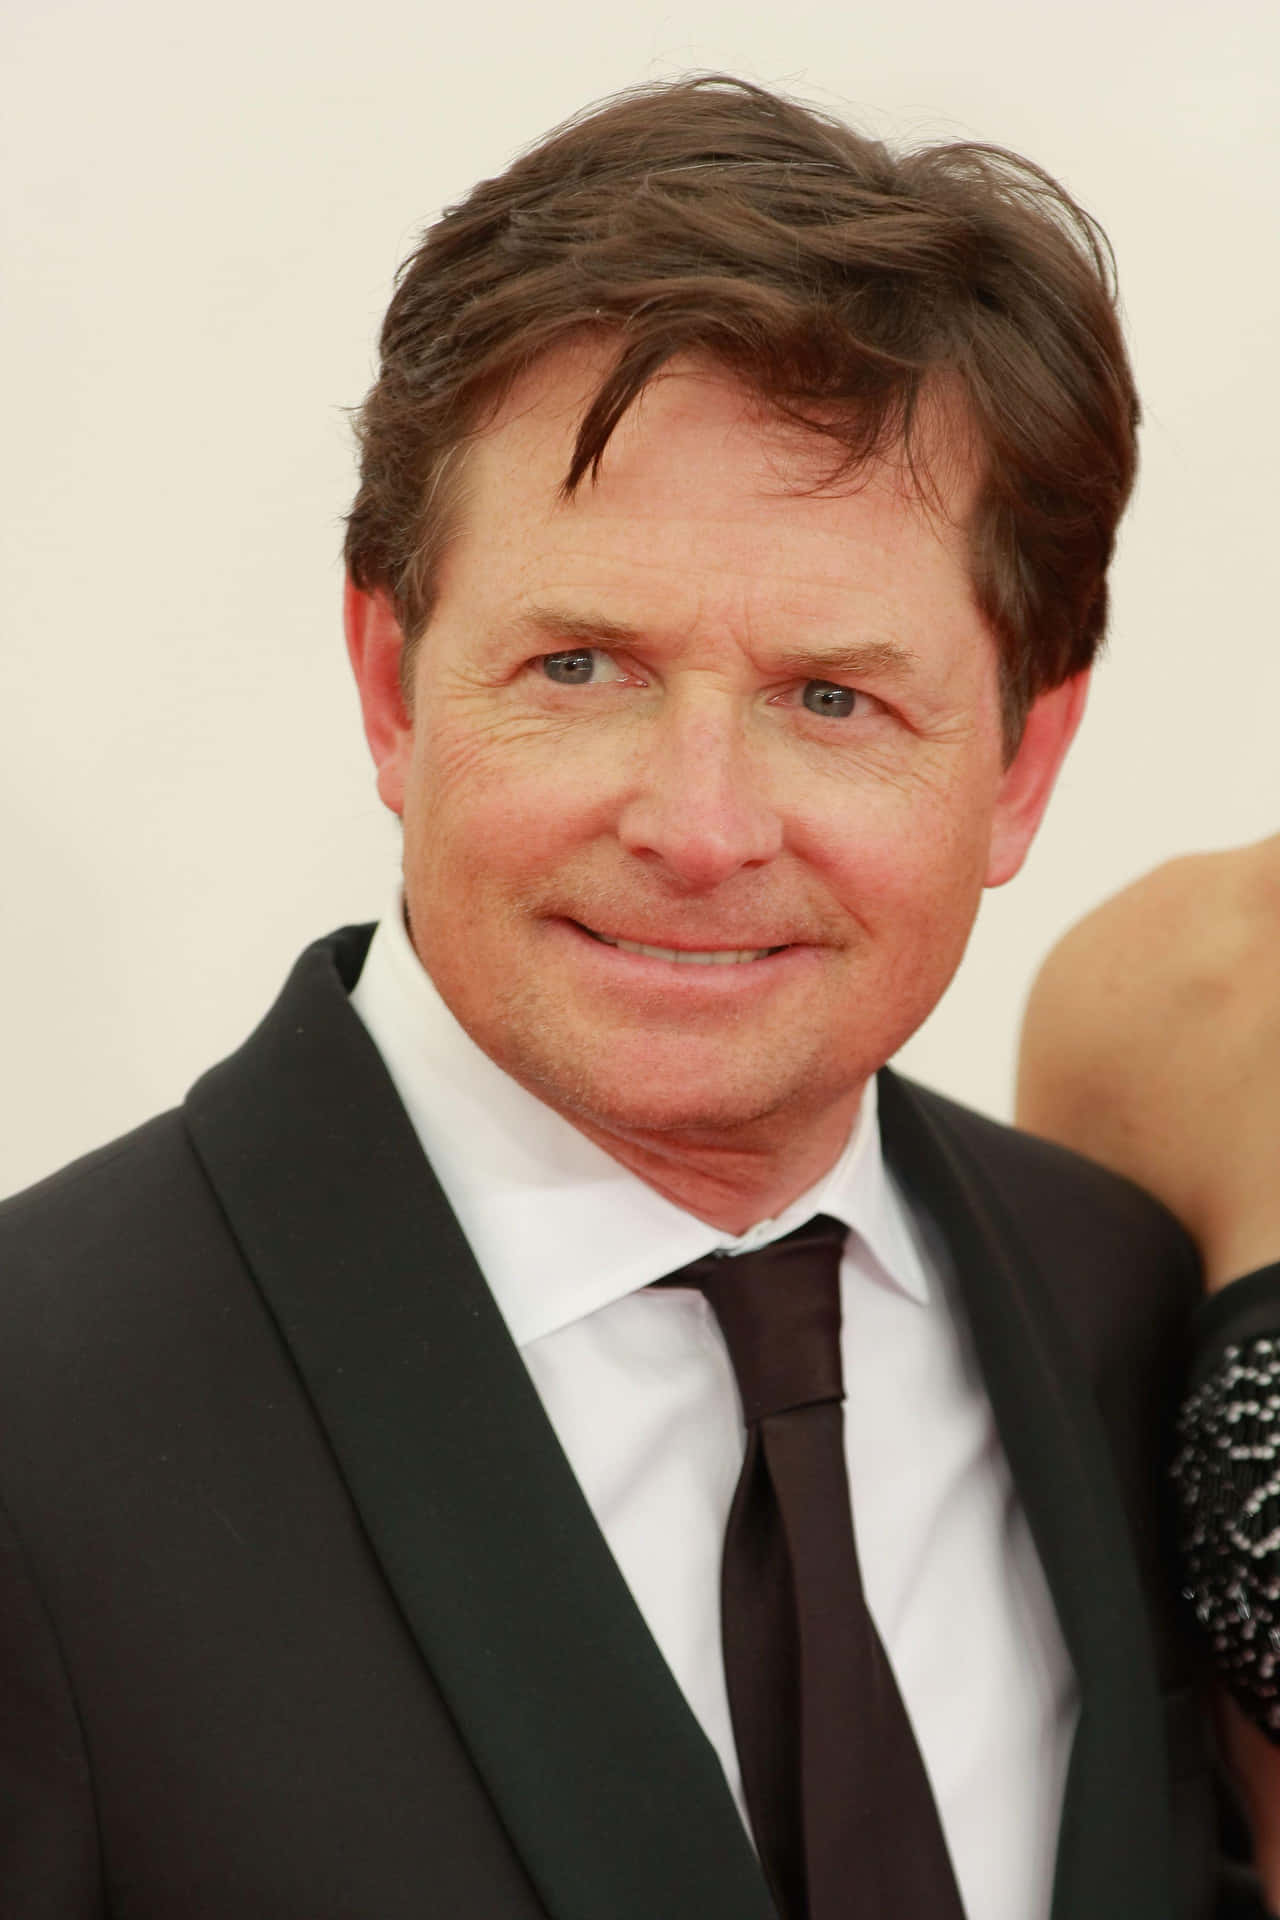 Actor Michael J Fox Brings Laughter and Joy Wallpaper